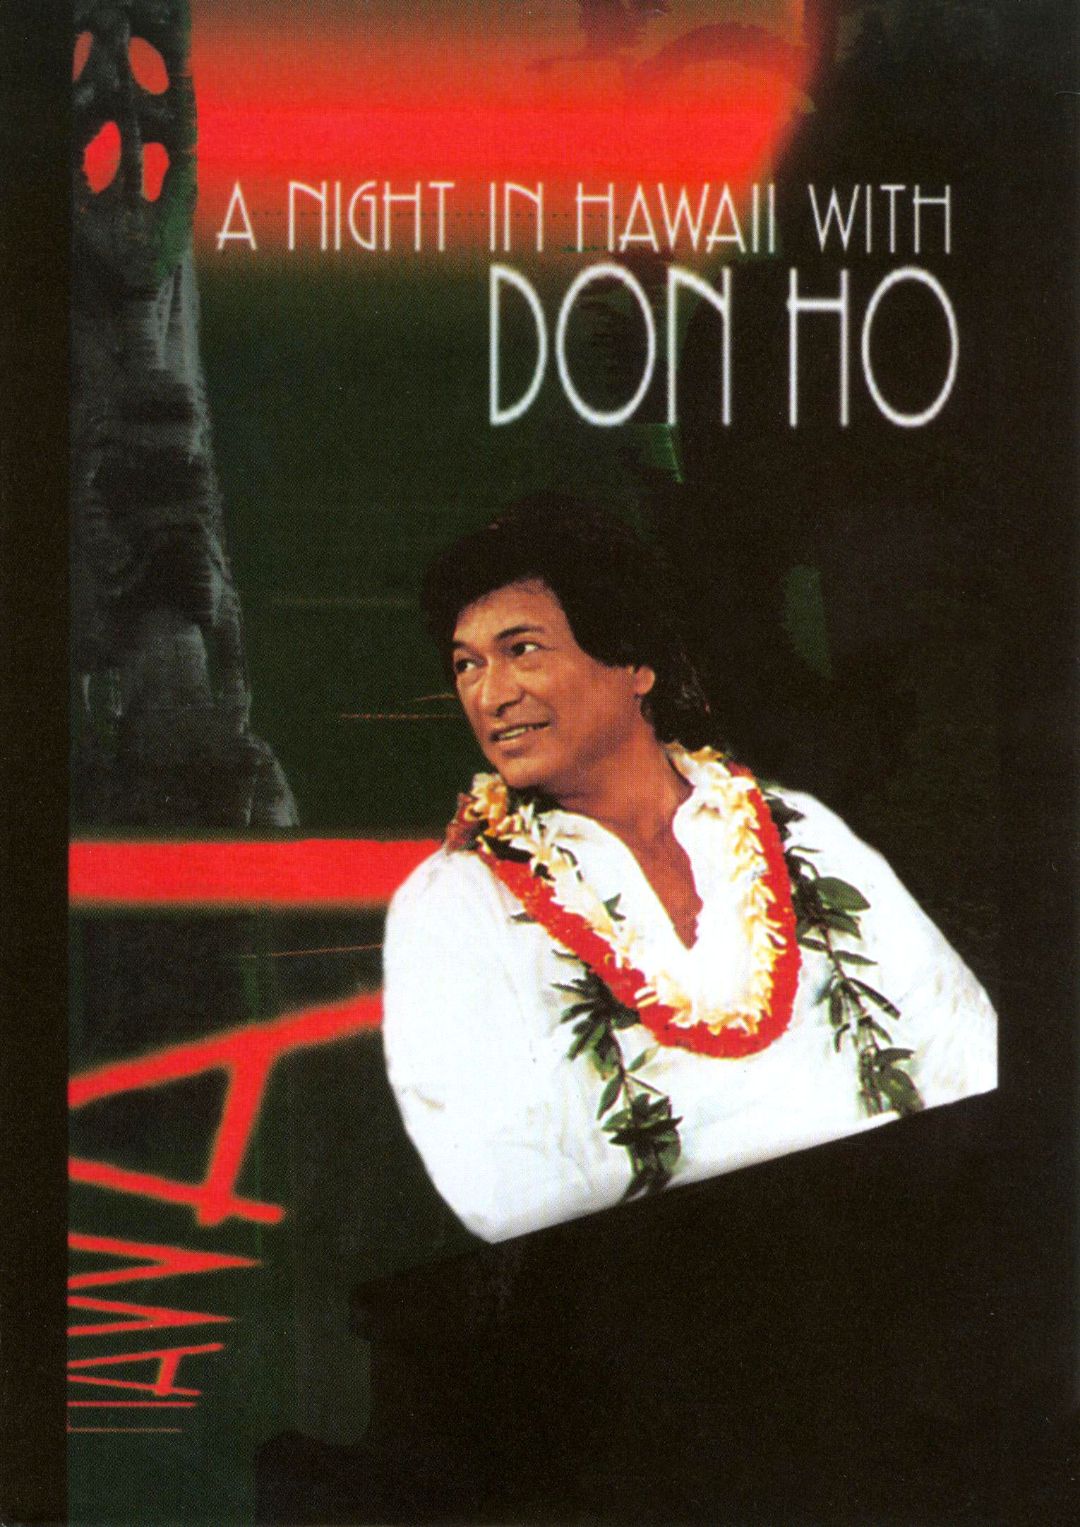 Don ho's hawaii